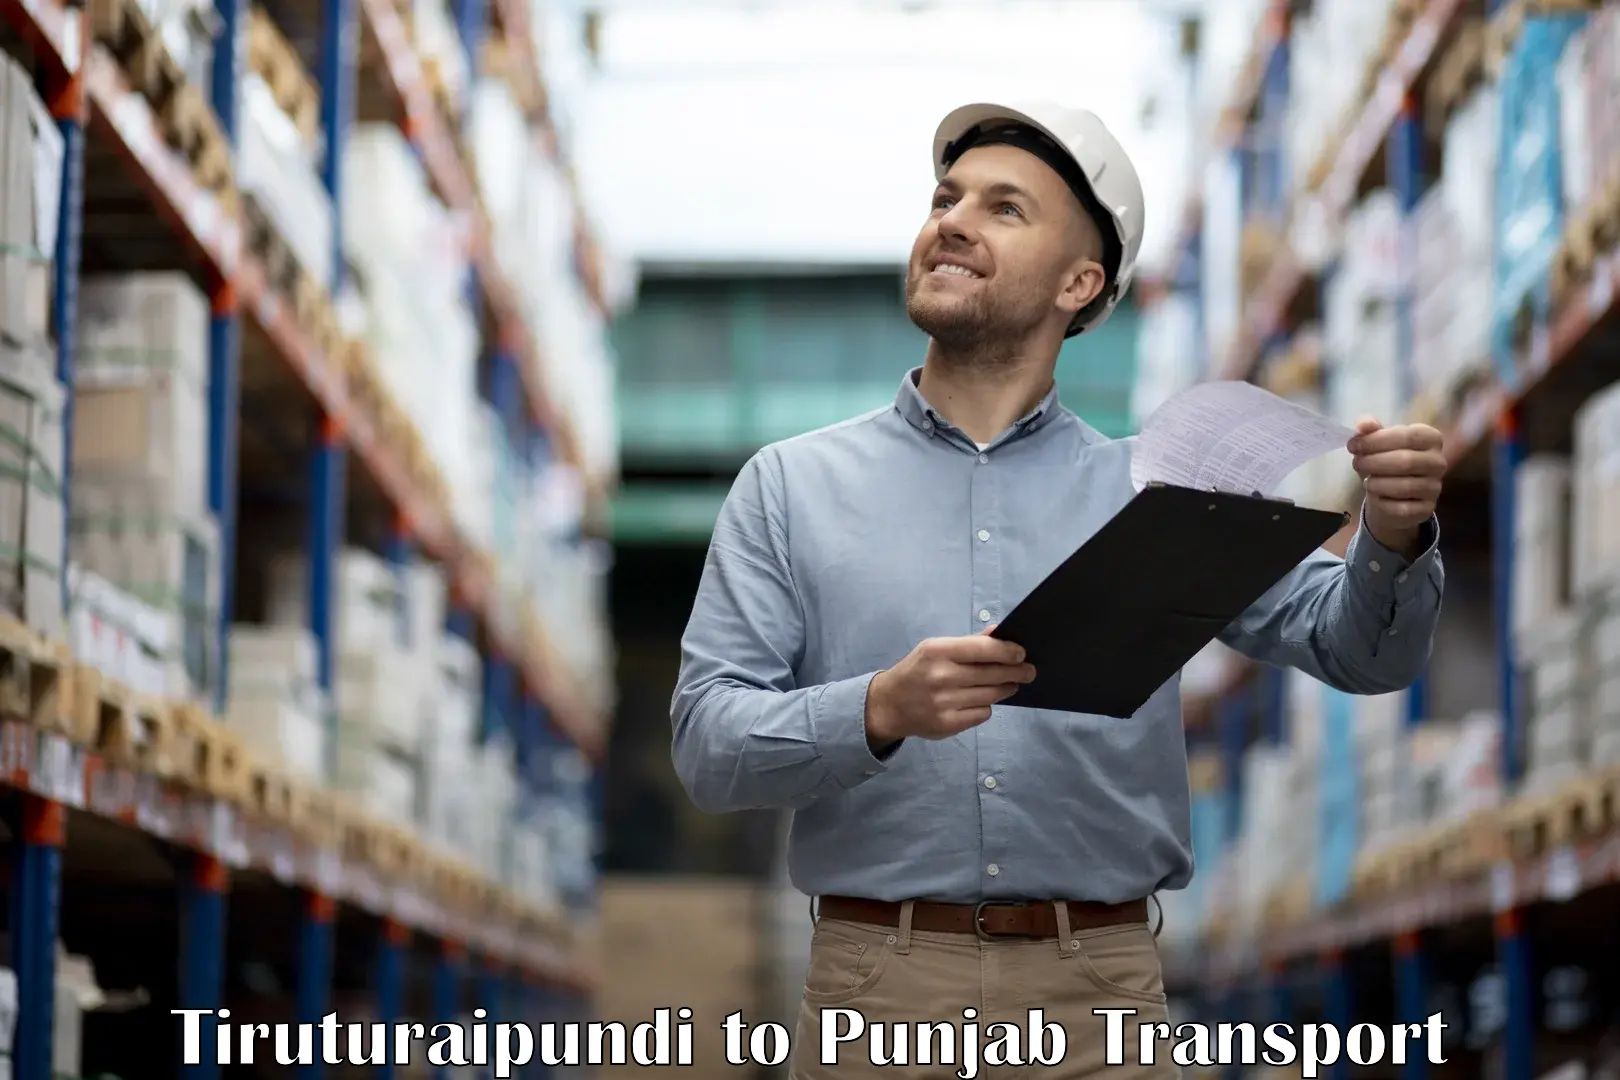 Pick up transport service Tiruturaipundi to Punjab